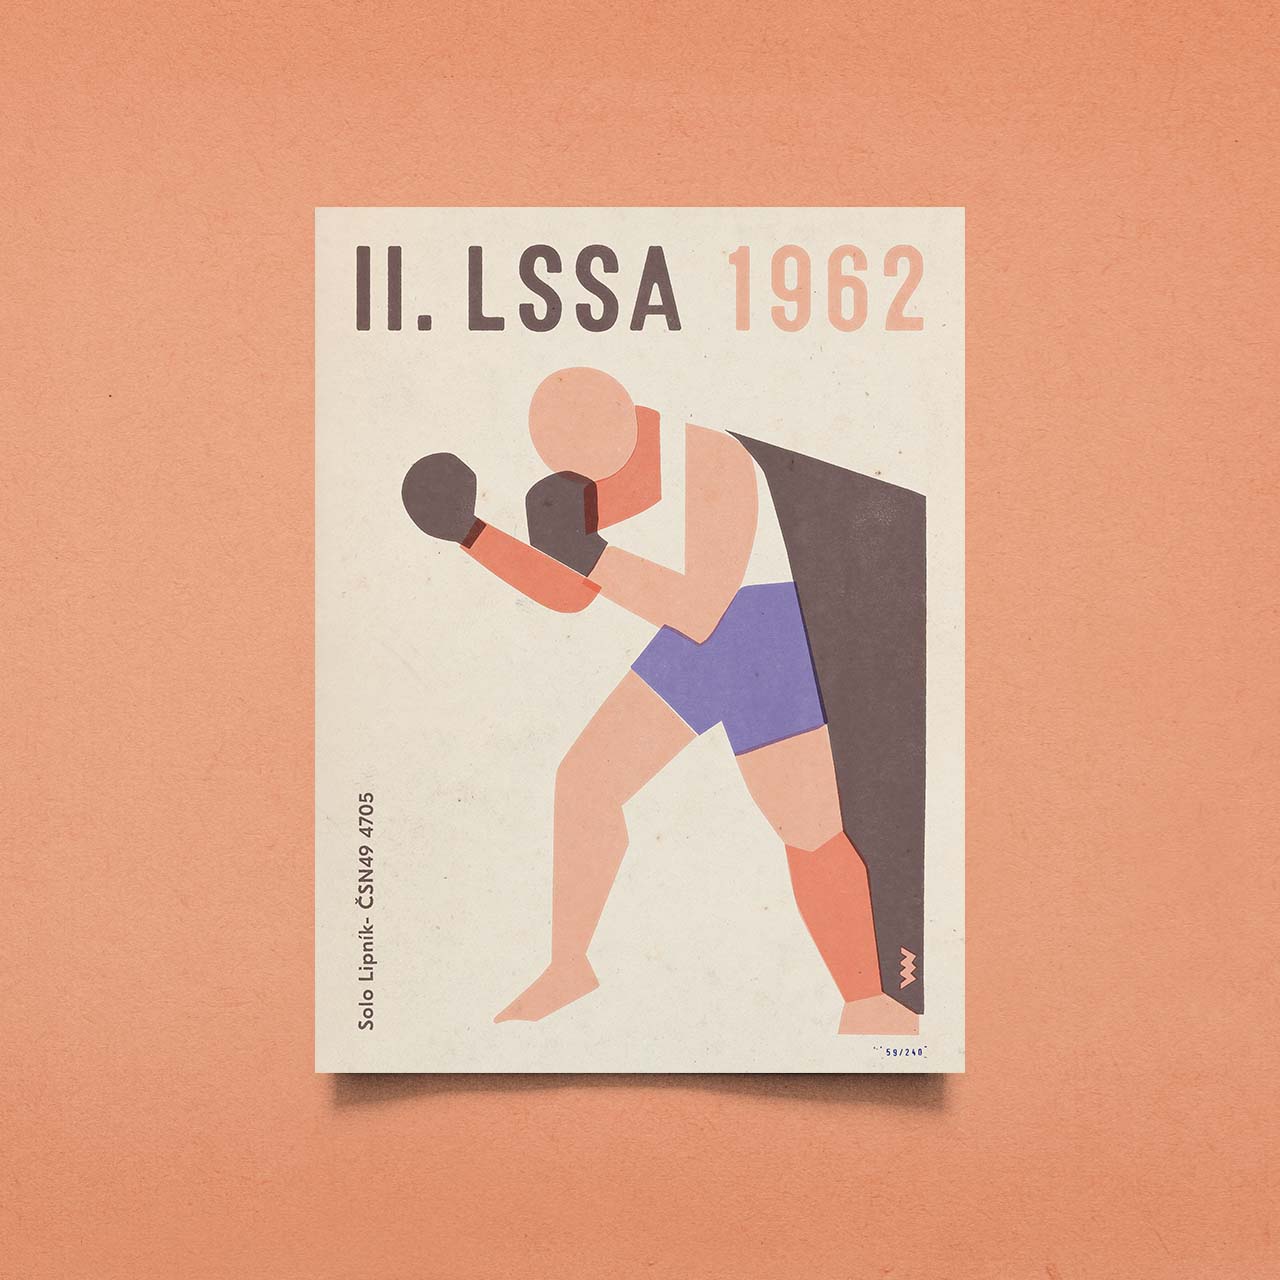 II. LSSA 1962 – Box – Poster 30 x 40 cm 